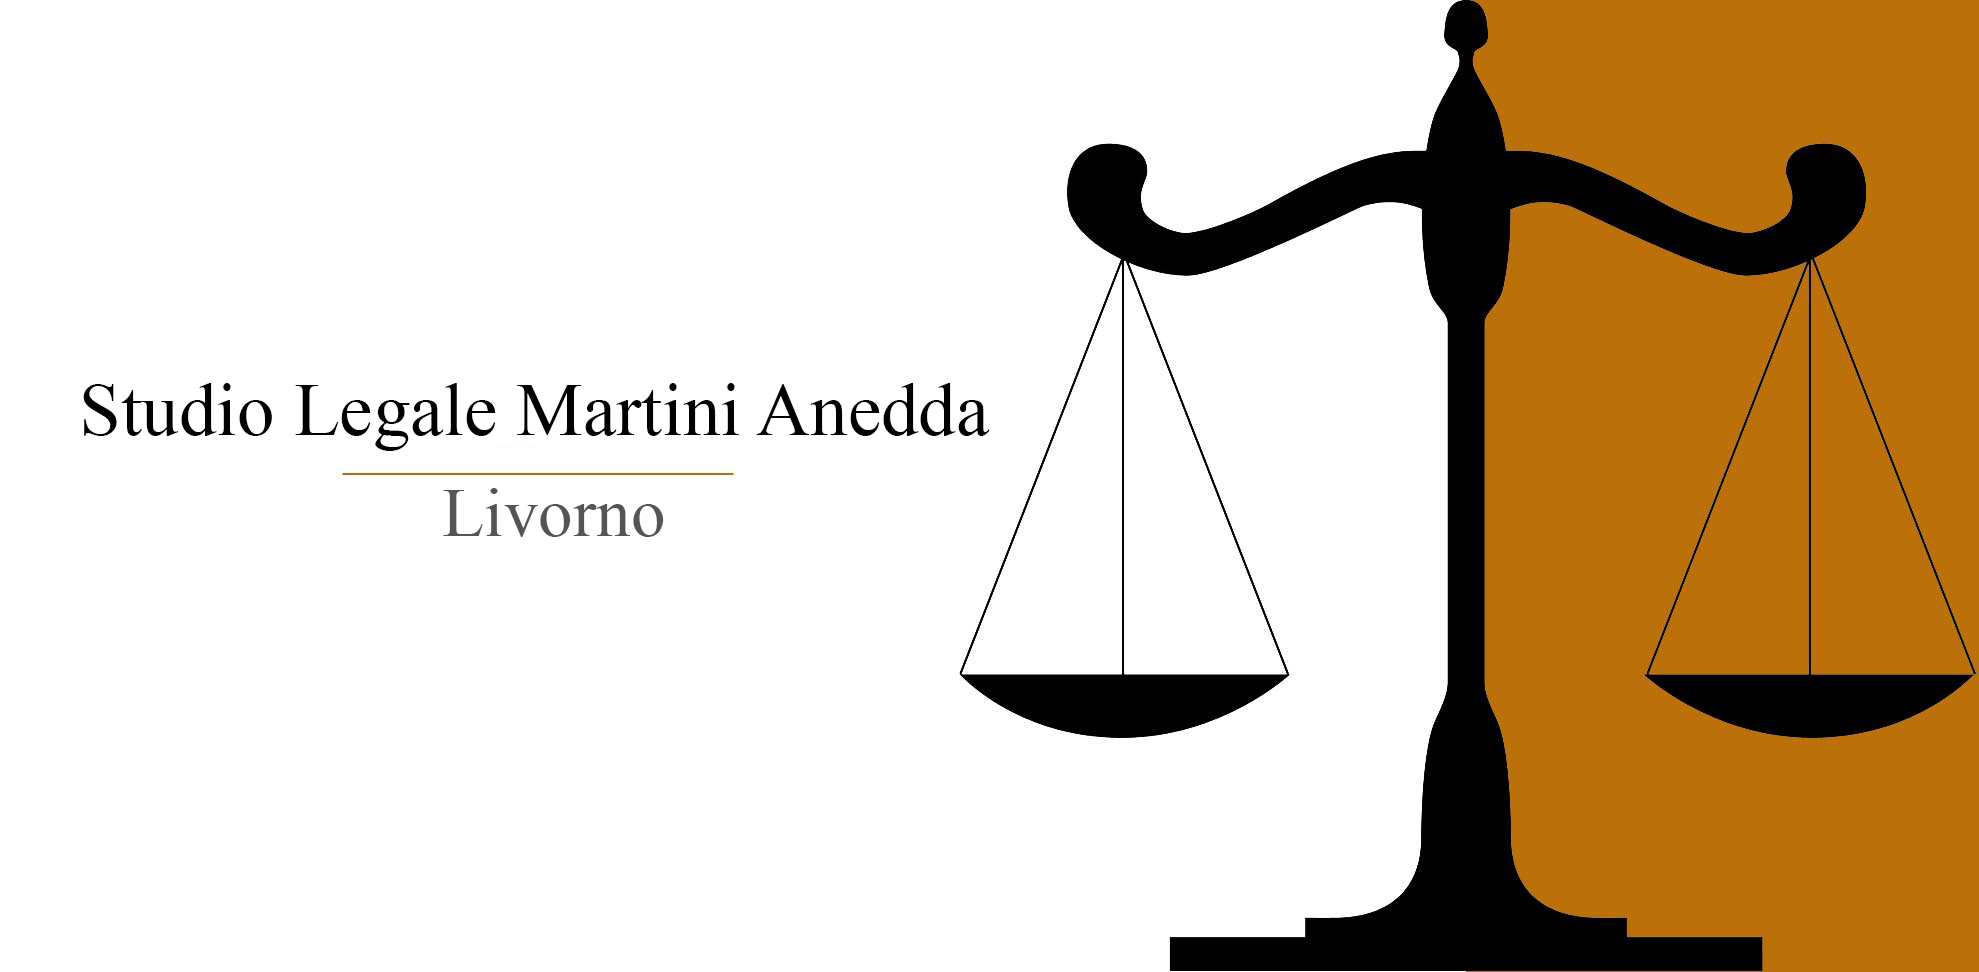 Studio Legale Martini Anedda, Livorno